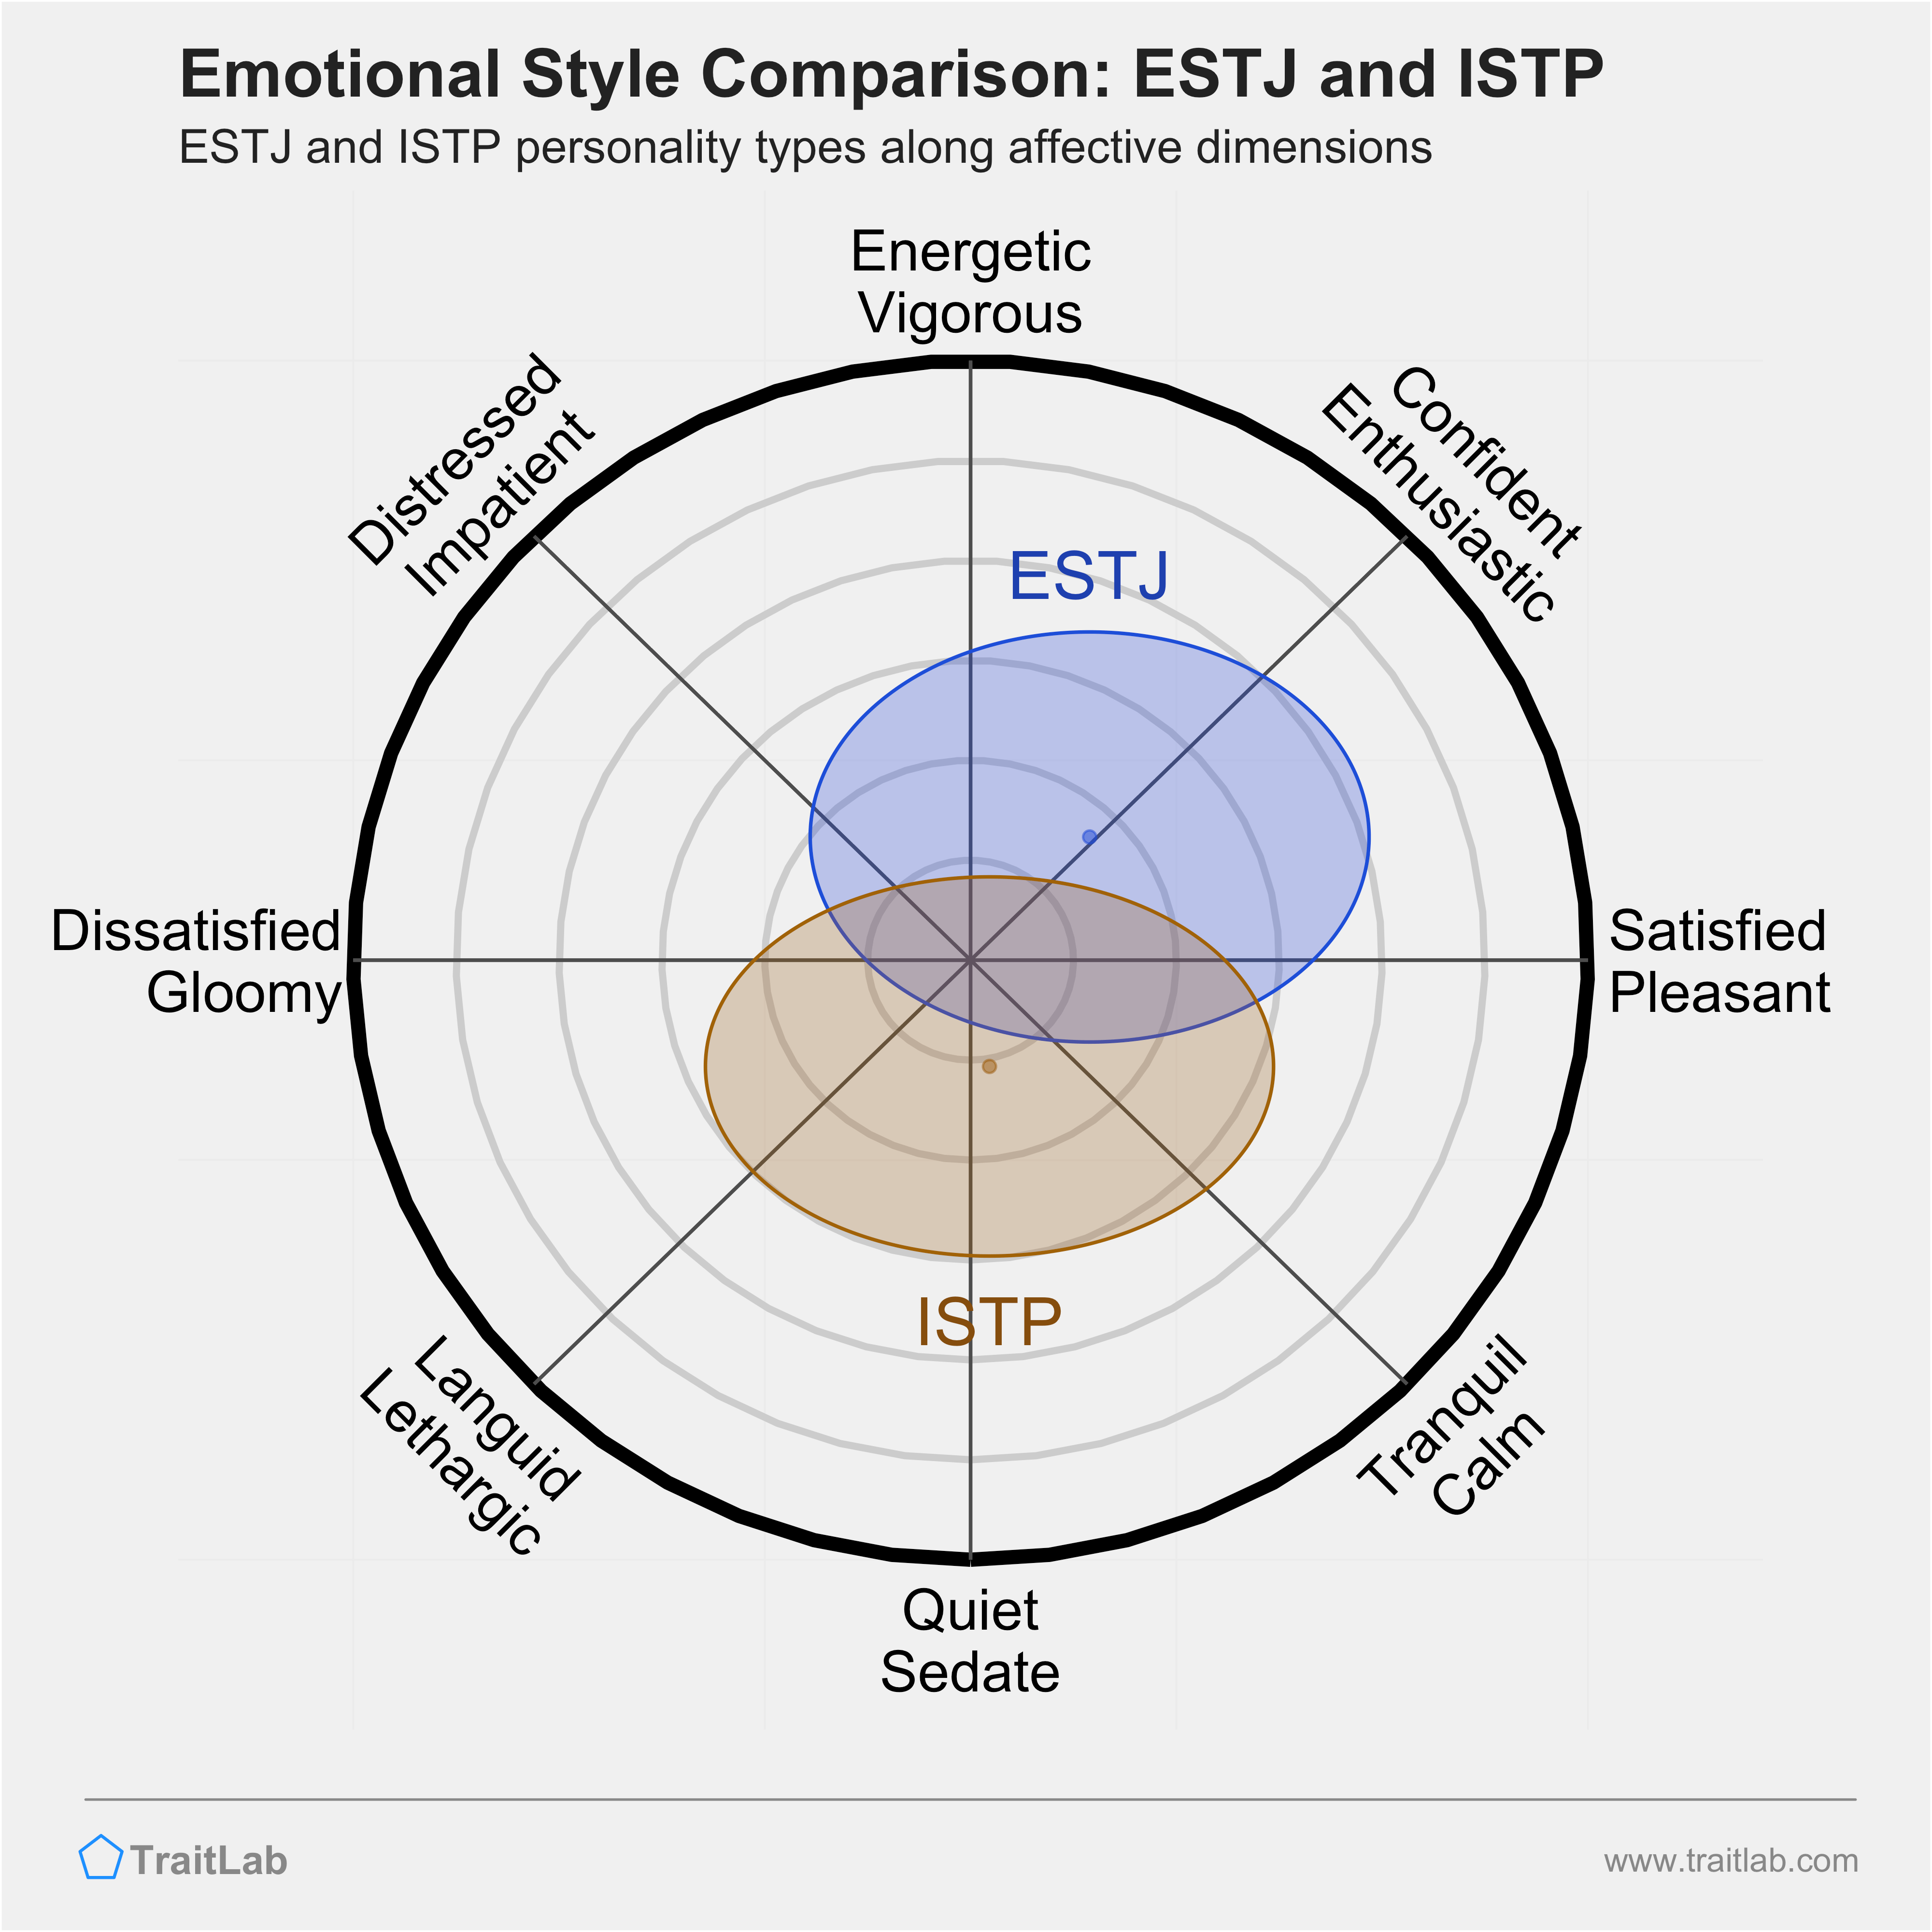 ESTJ and ISTP comparison across emotional (affective) dimensions